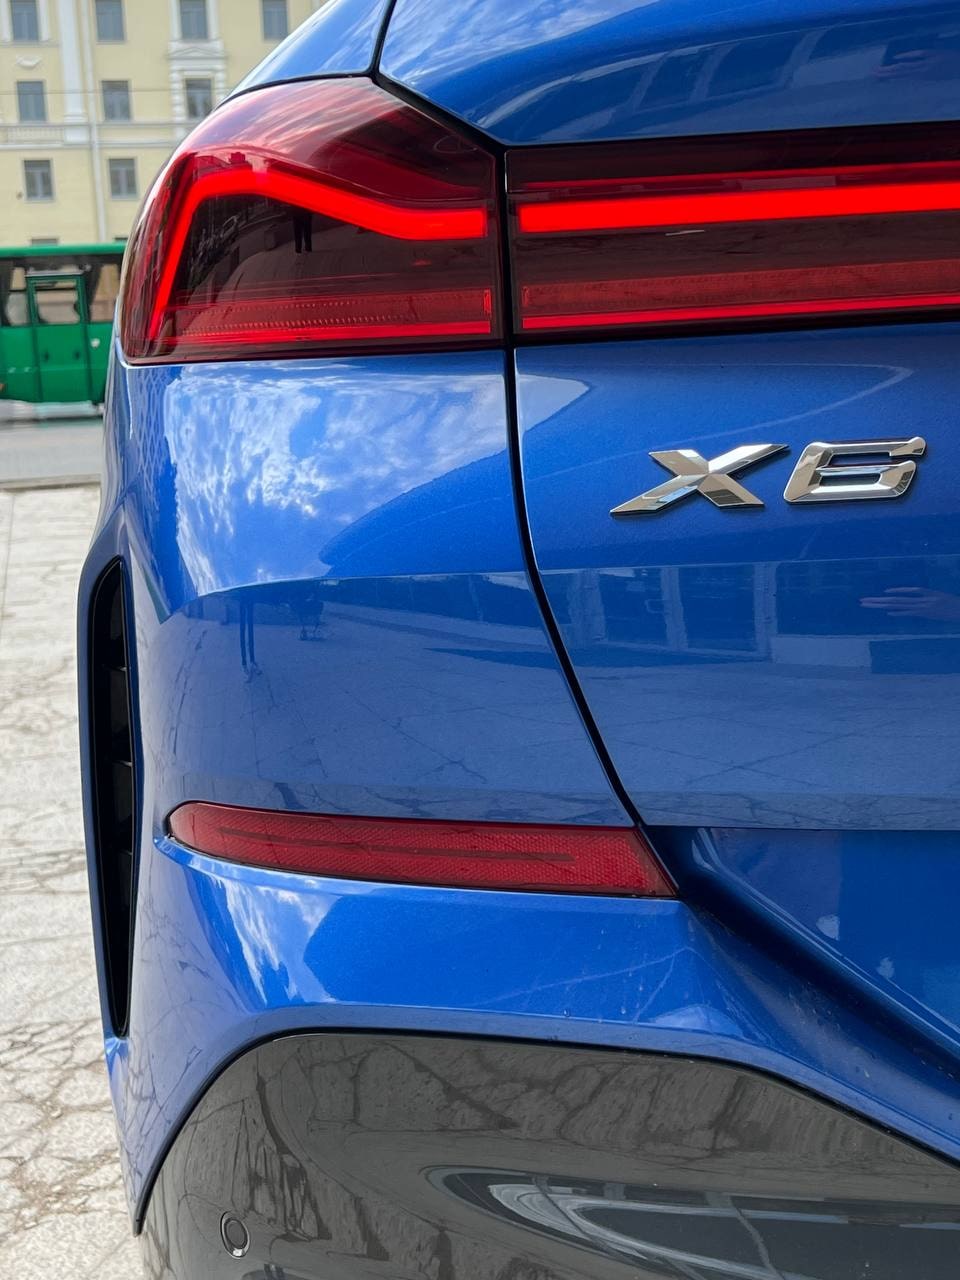 Аренда  BMW X6 G06 M-Sport Pro  6 класса 2020 года в городе Минск от 290 $/сутки,  двигатель: ДТ , объем 3.0 литров, КАСКО (Мультидрайв), без водителя, вид 4 - West Group